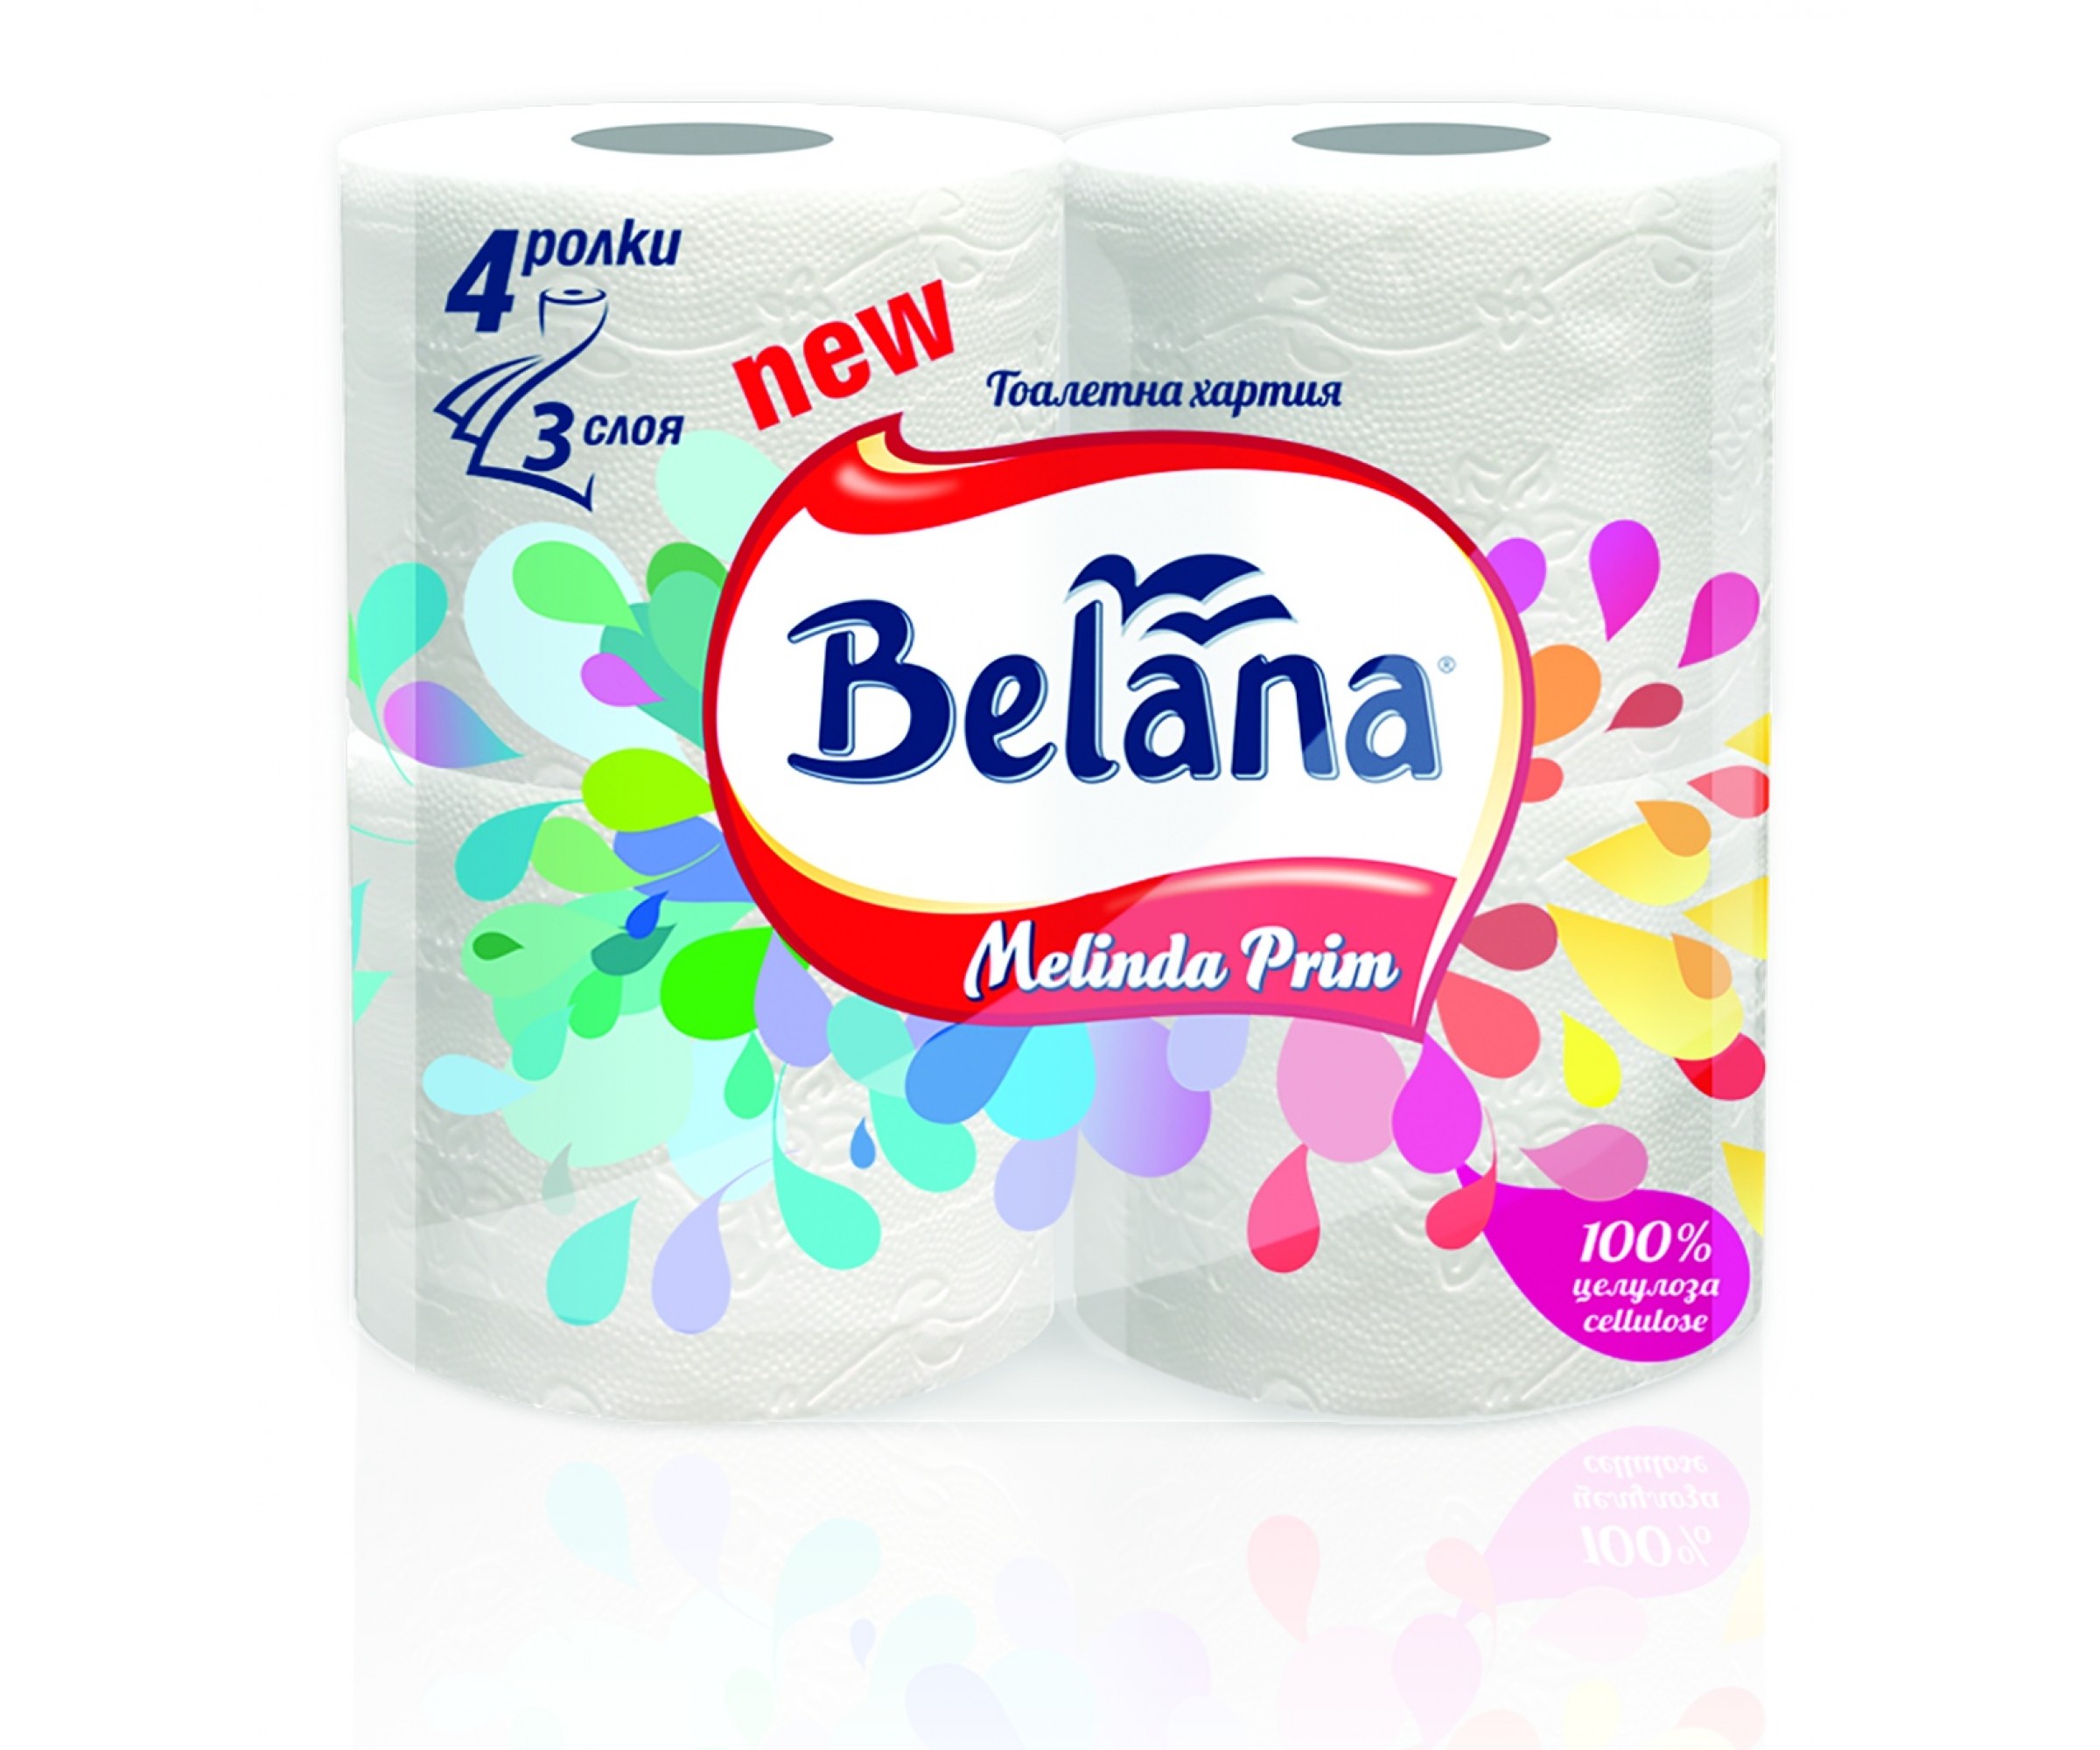 Тоалетна хартия Белана Мелинда Прим, 4 ролки, 100% целулоза, 3 пласта, 95 къса